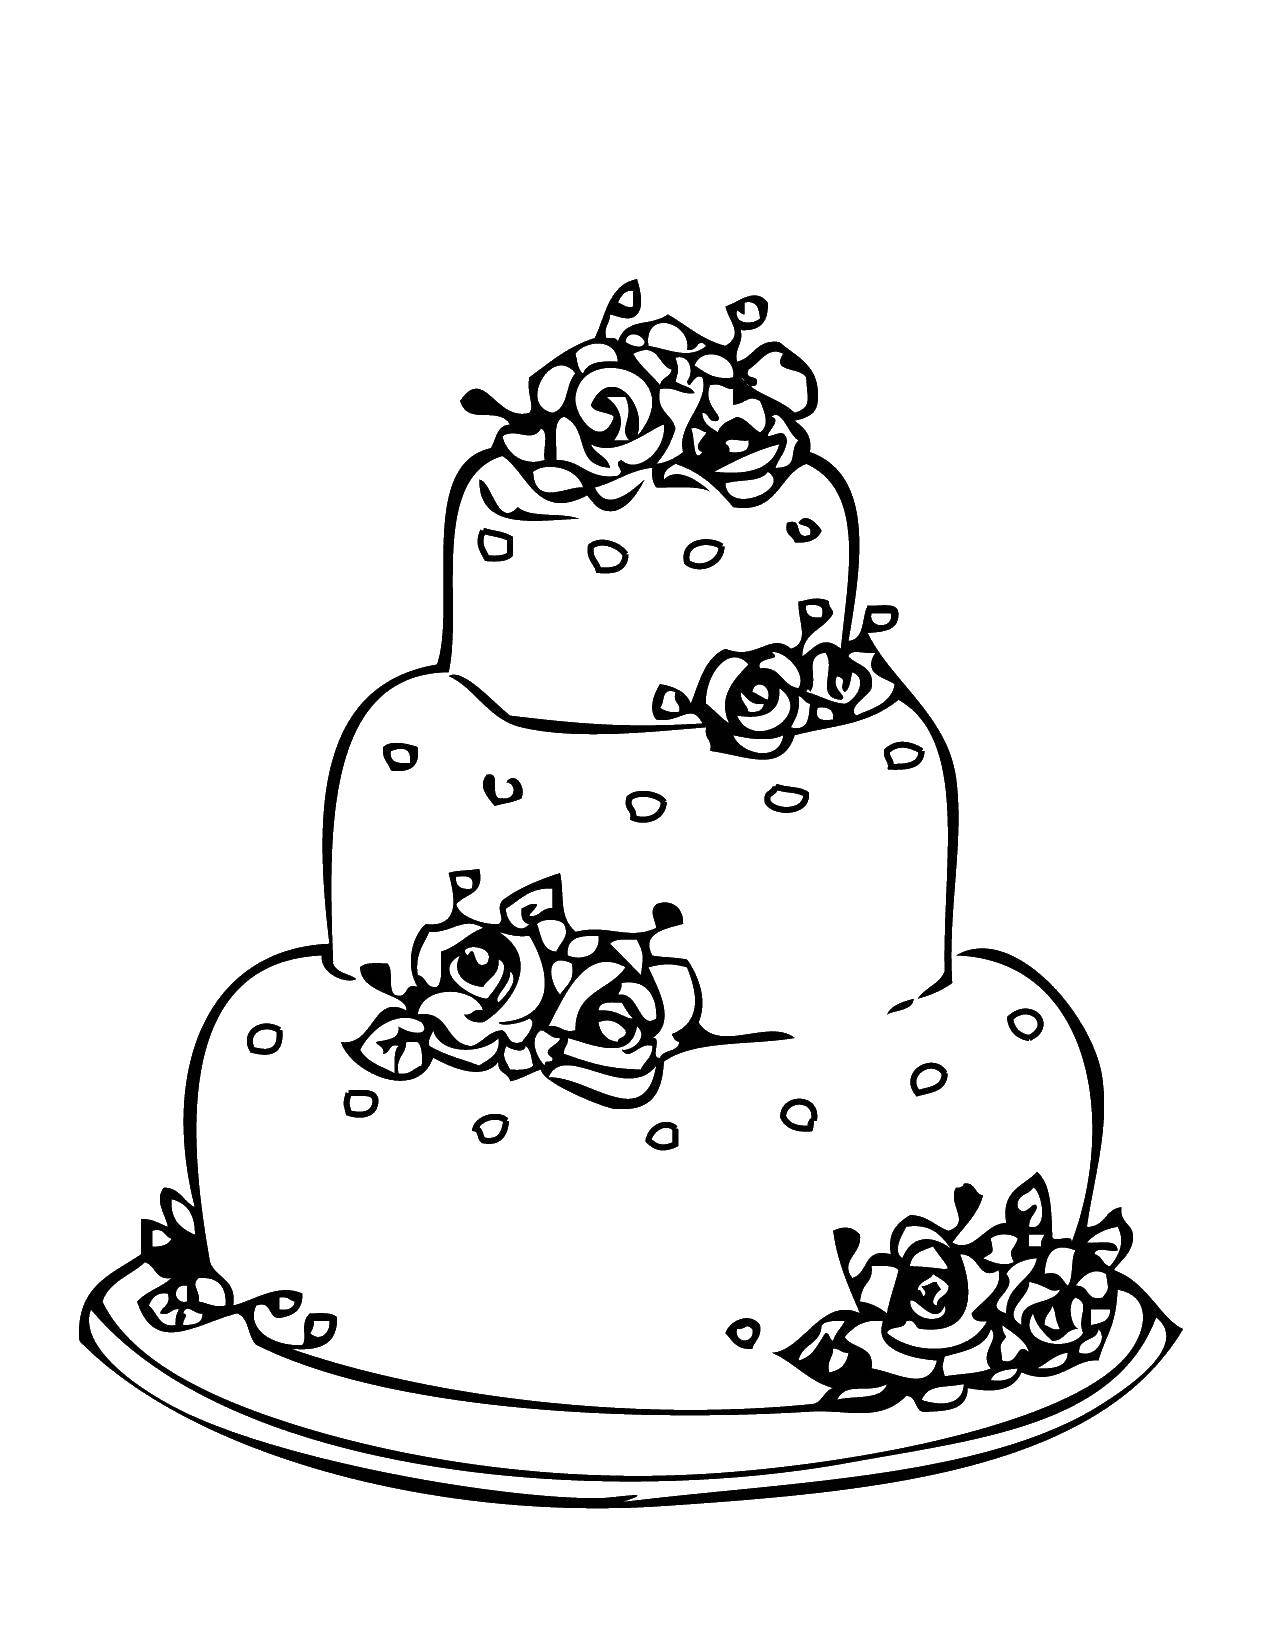 Опис: розмальовки  Весільний тортик з трояндами. Категорія: торти. Теги:  торти, солодощі, троянди.